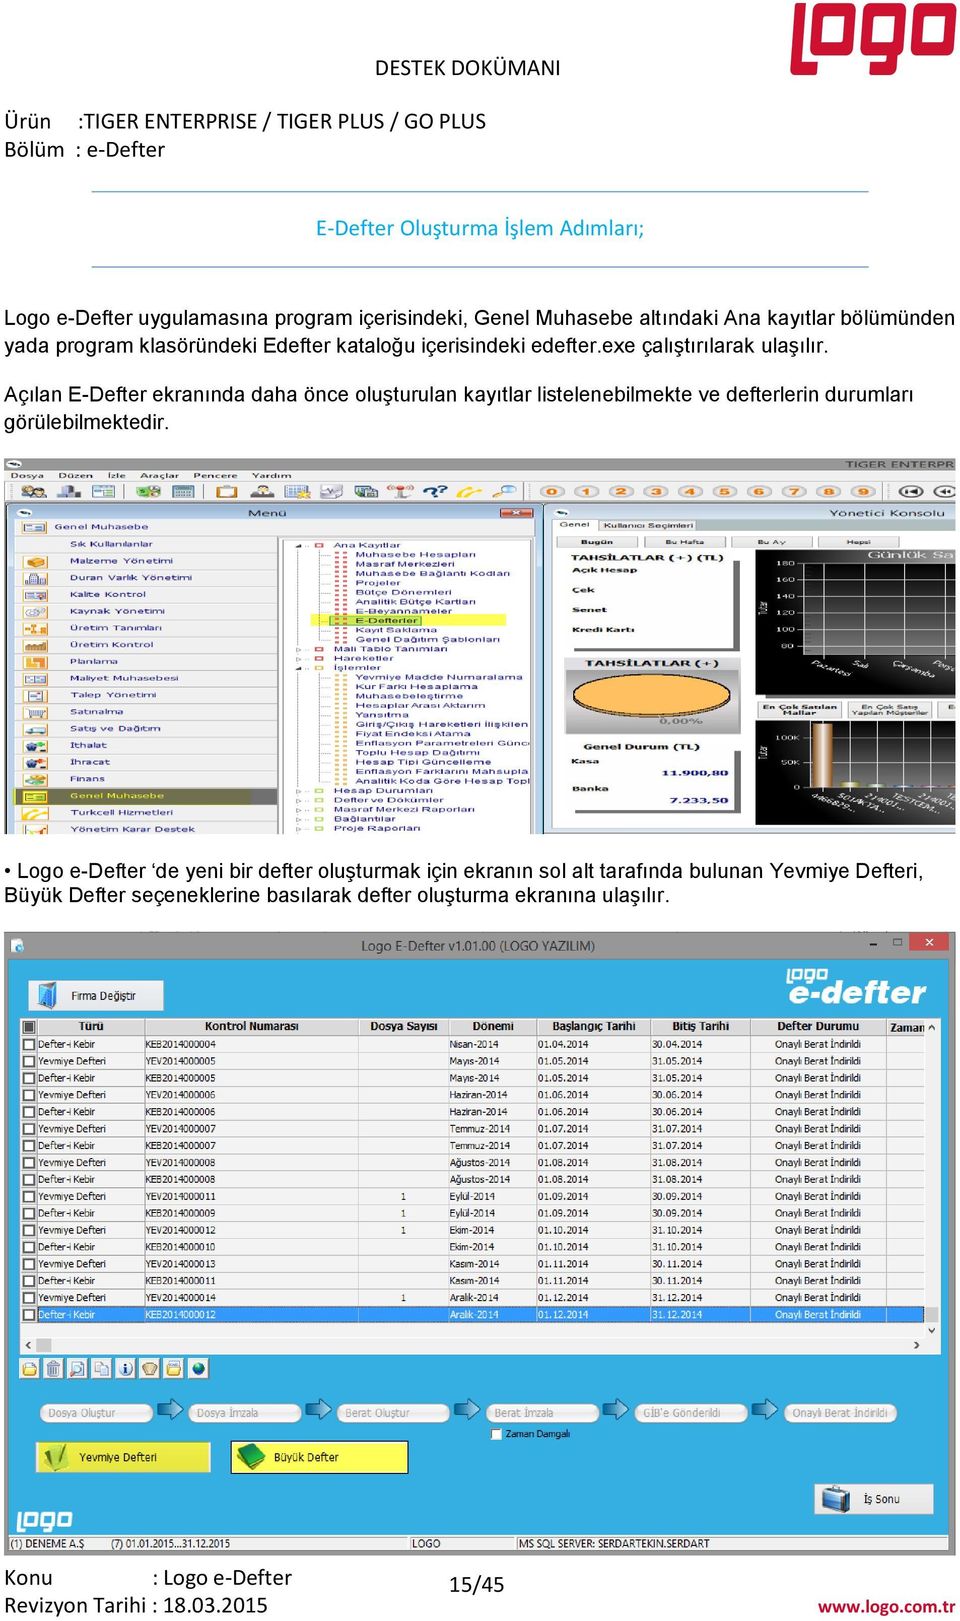 Açılan E-Defter ekranında daha önce oluşturulan kayıtlar listelenebilmekte ve defterlerin durumları görülebilmektedir.